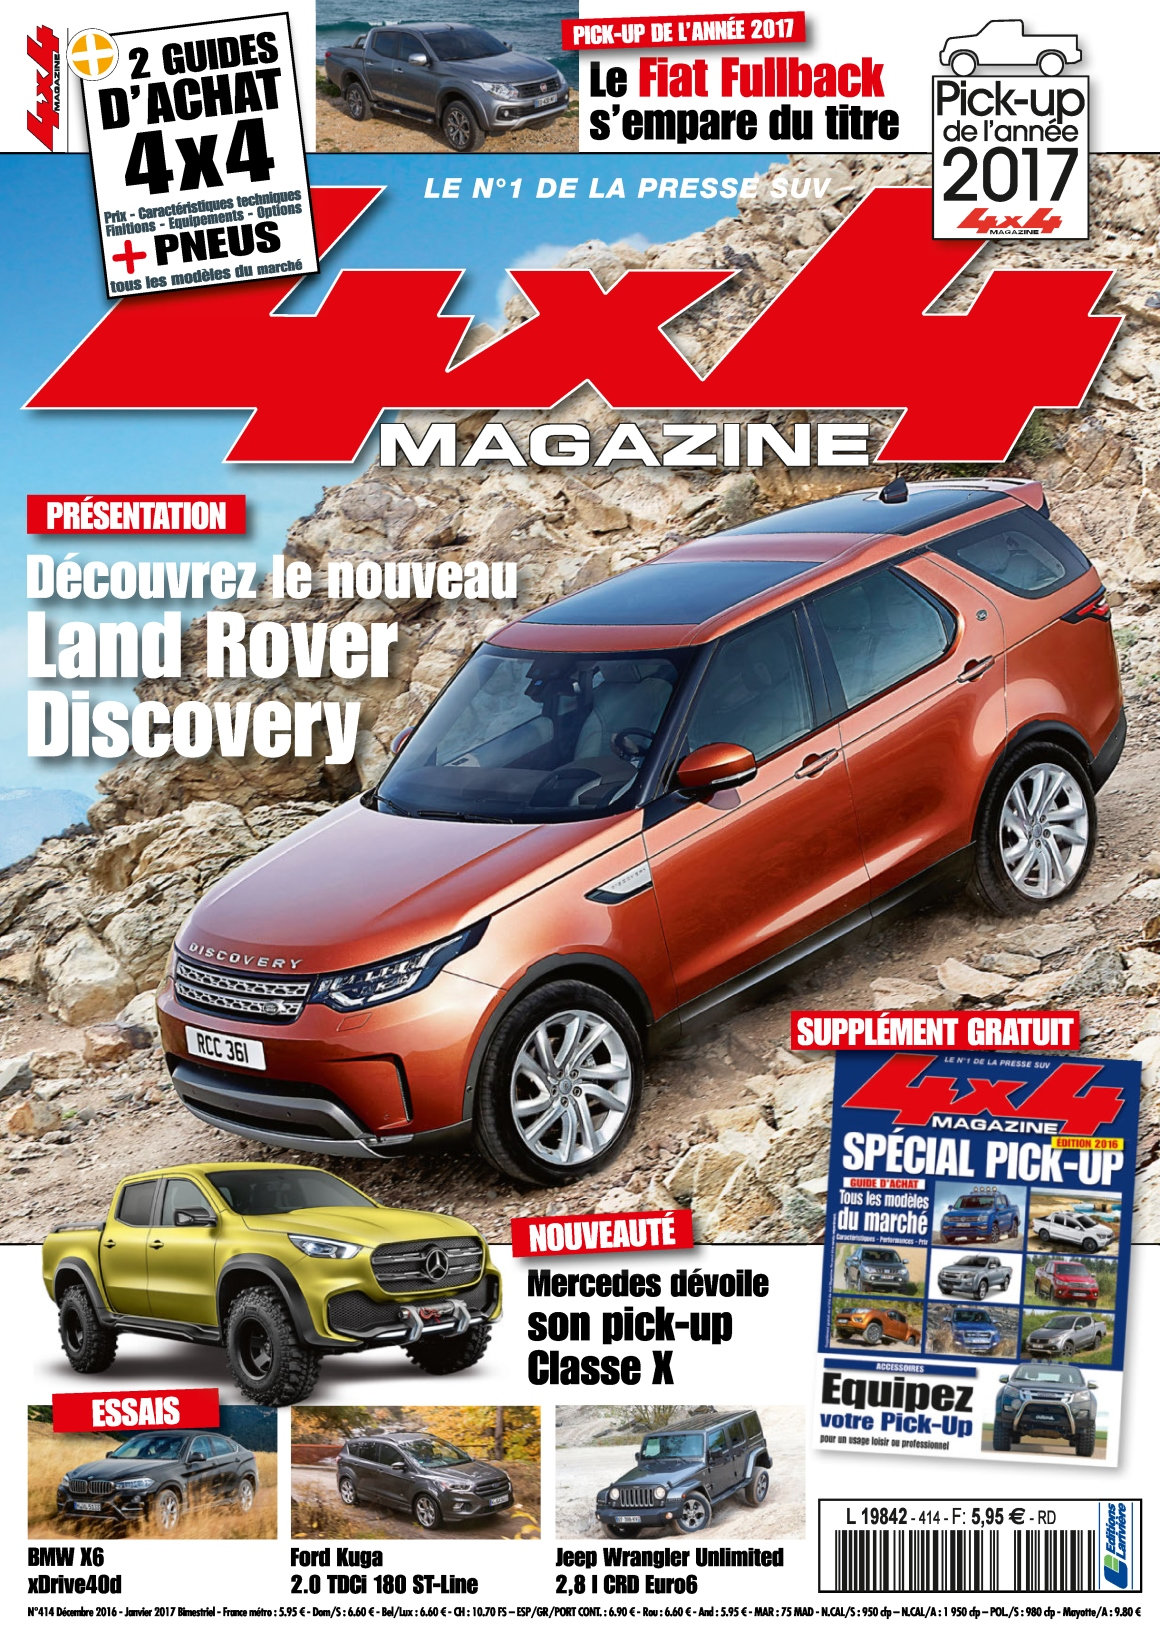 4x4 magazine N°414 - Décembre 2016/Janvier 2017 